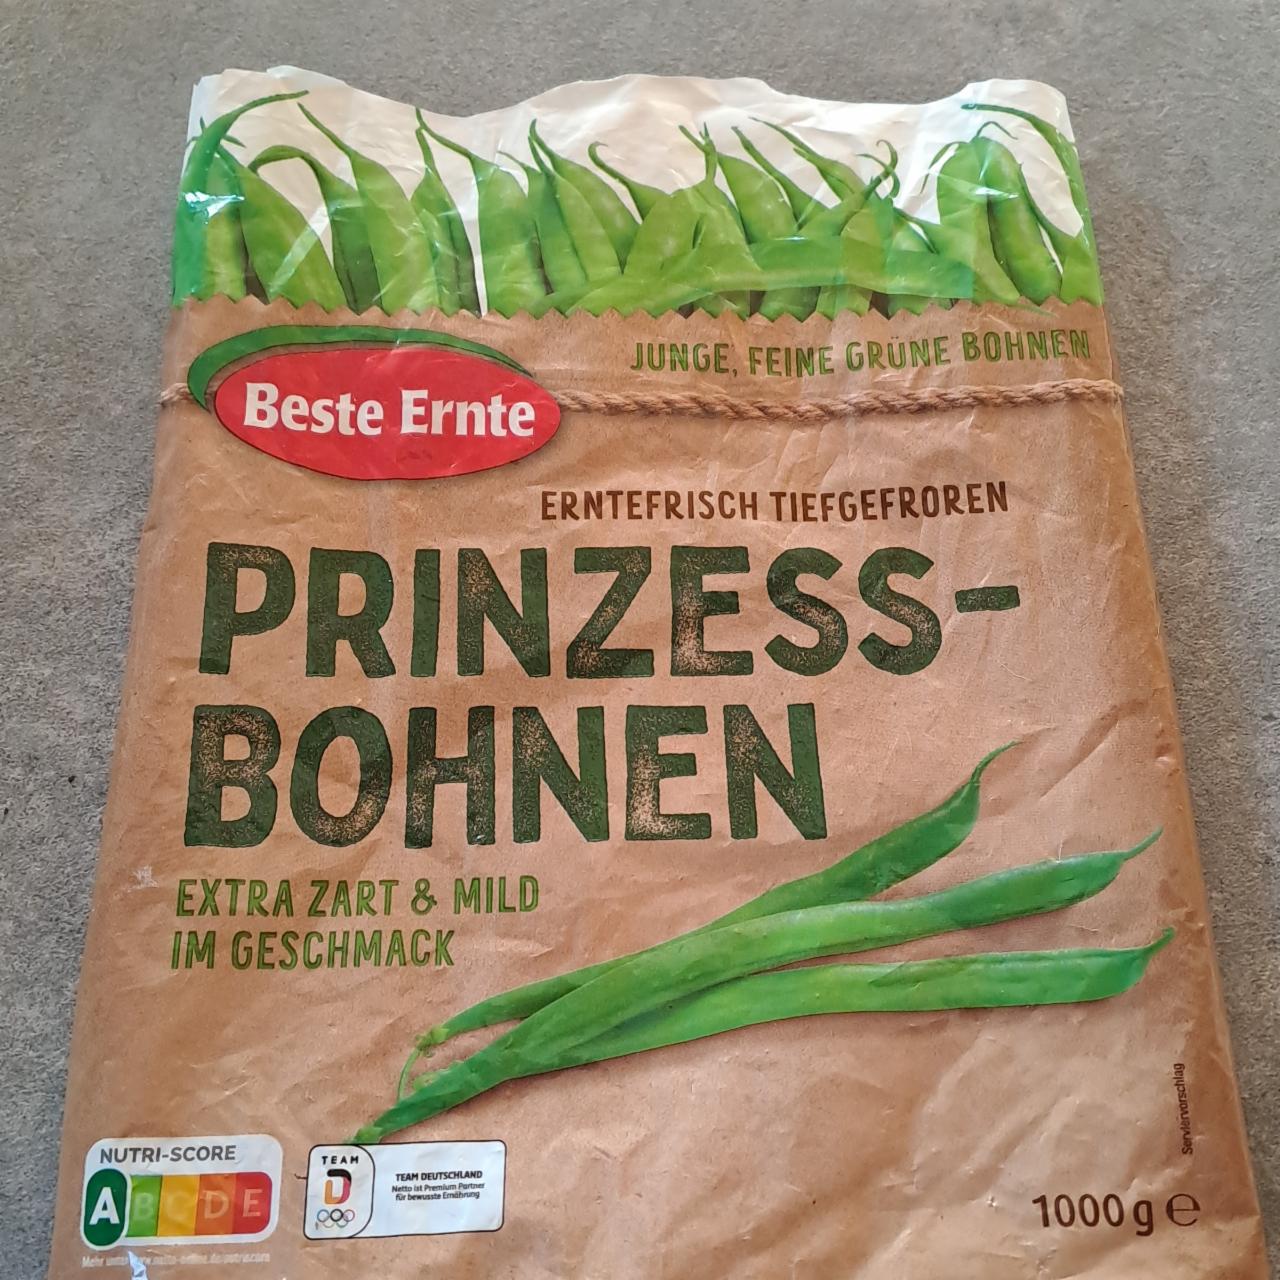 Fotografie - Prinzess Bohnen Beste Ernte